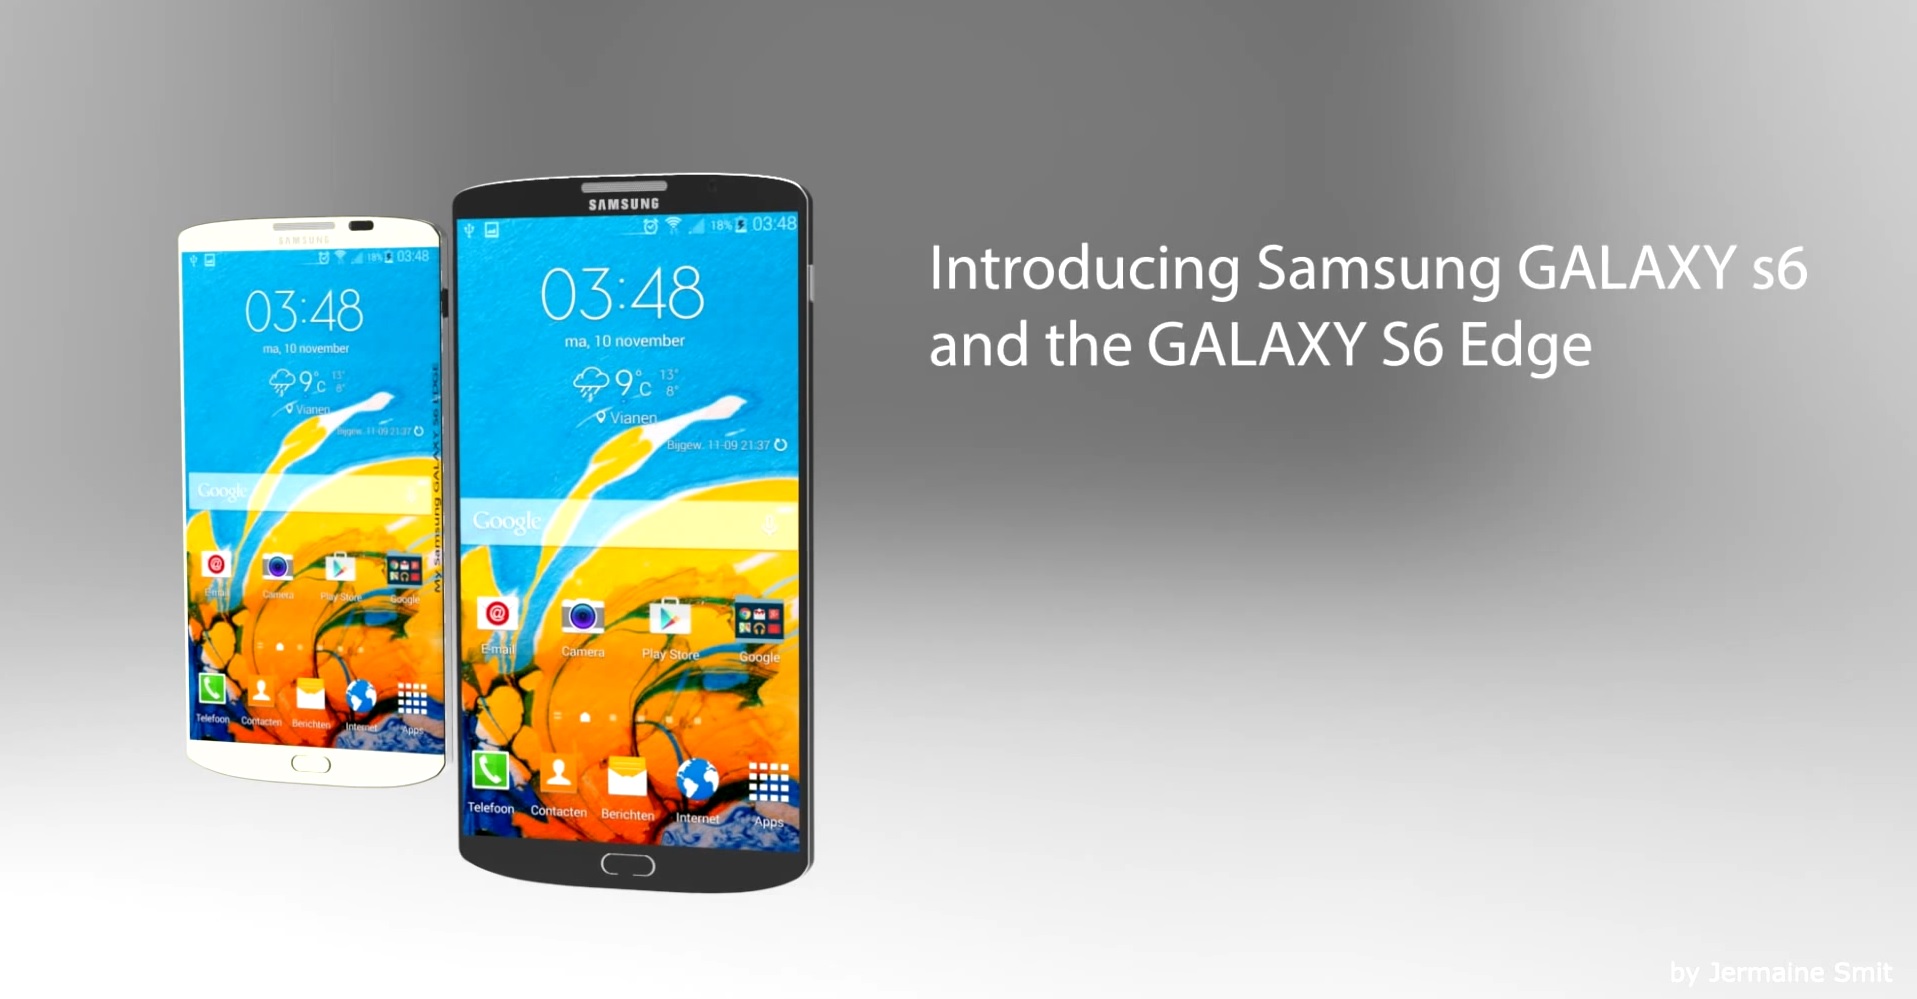 มาดูกัน Samsung Galaxy S6 และ S6 Edge จะมีหน้าตาเป็นอย่างไร (Concept)